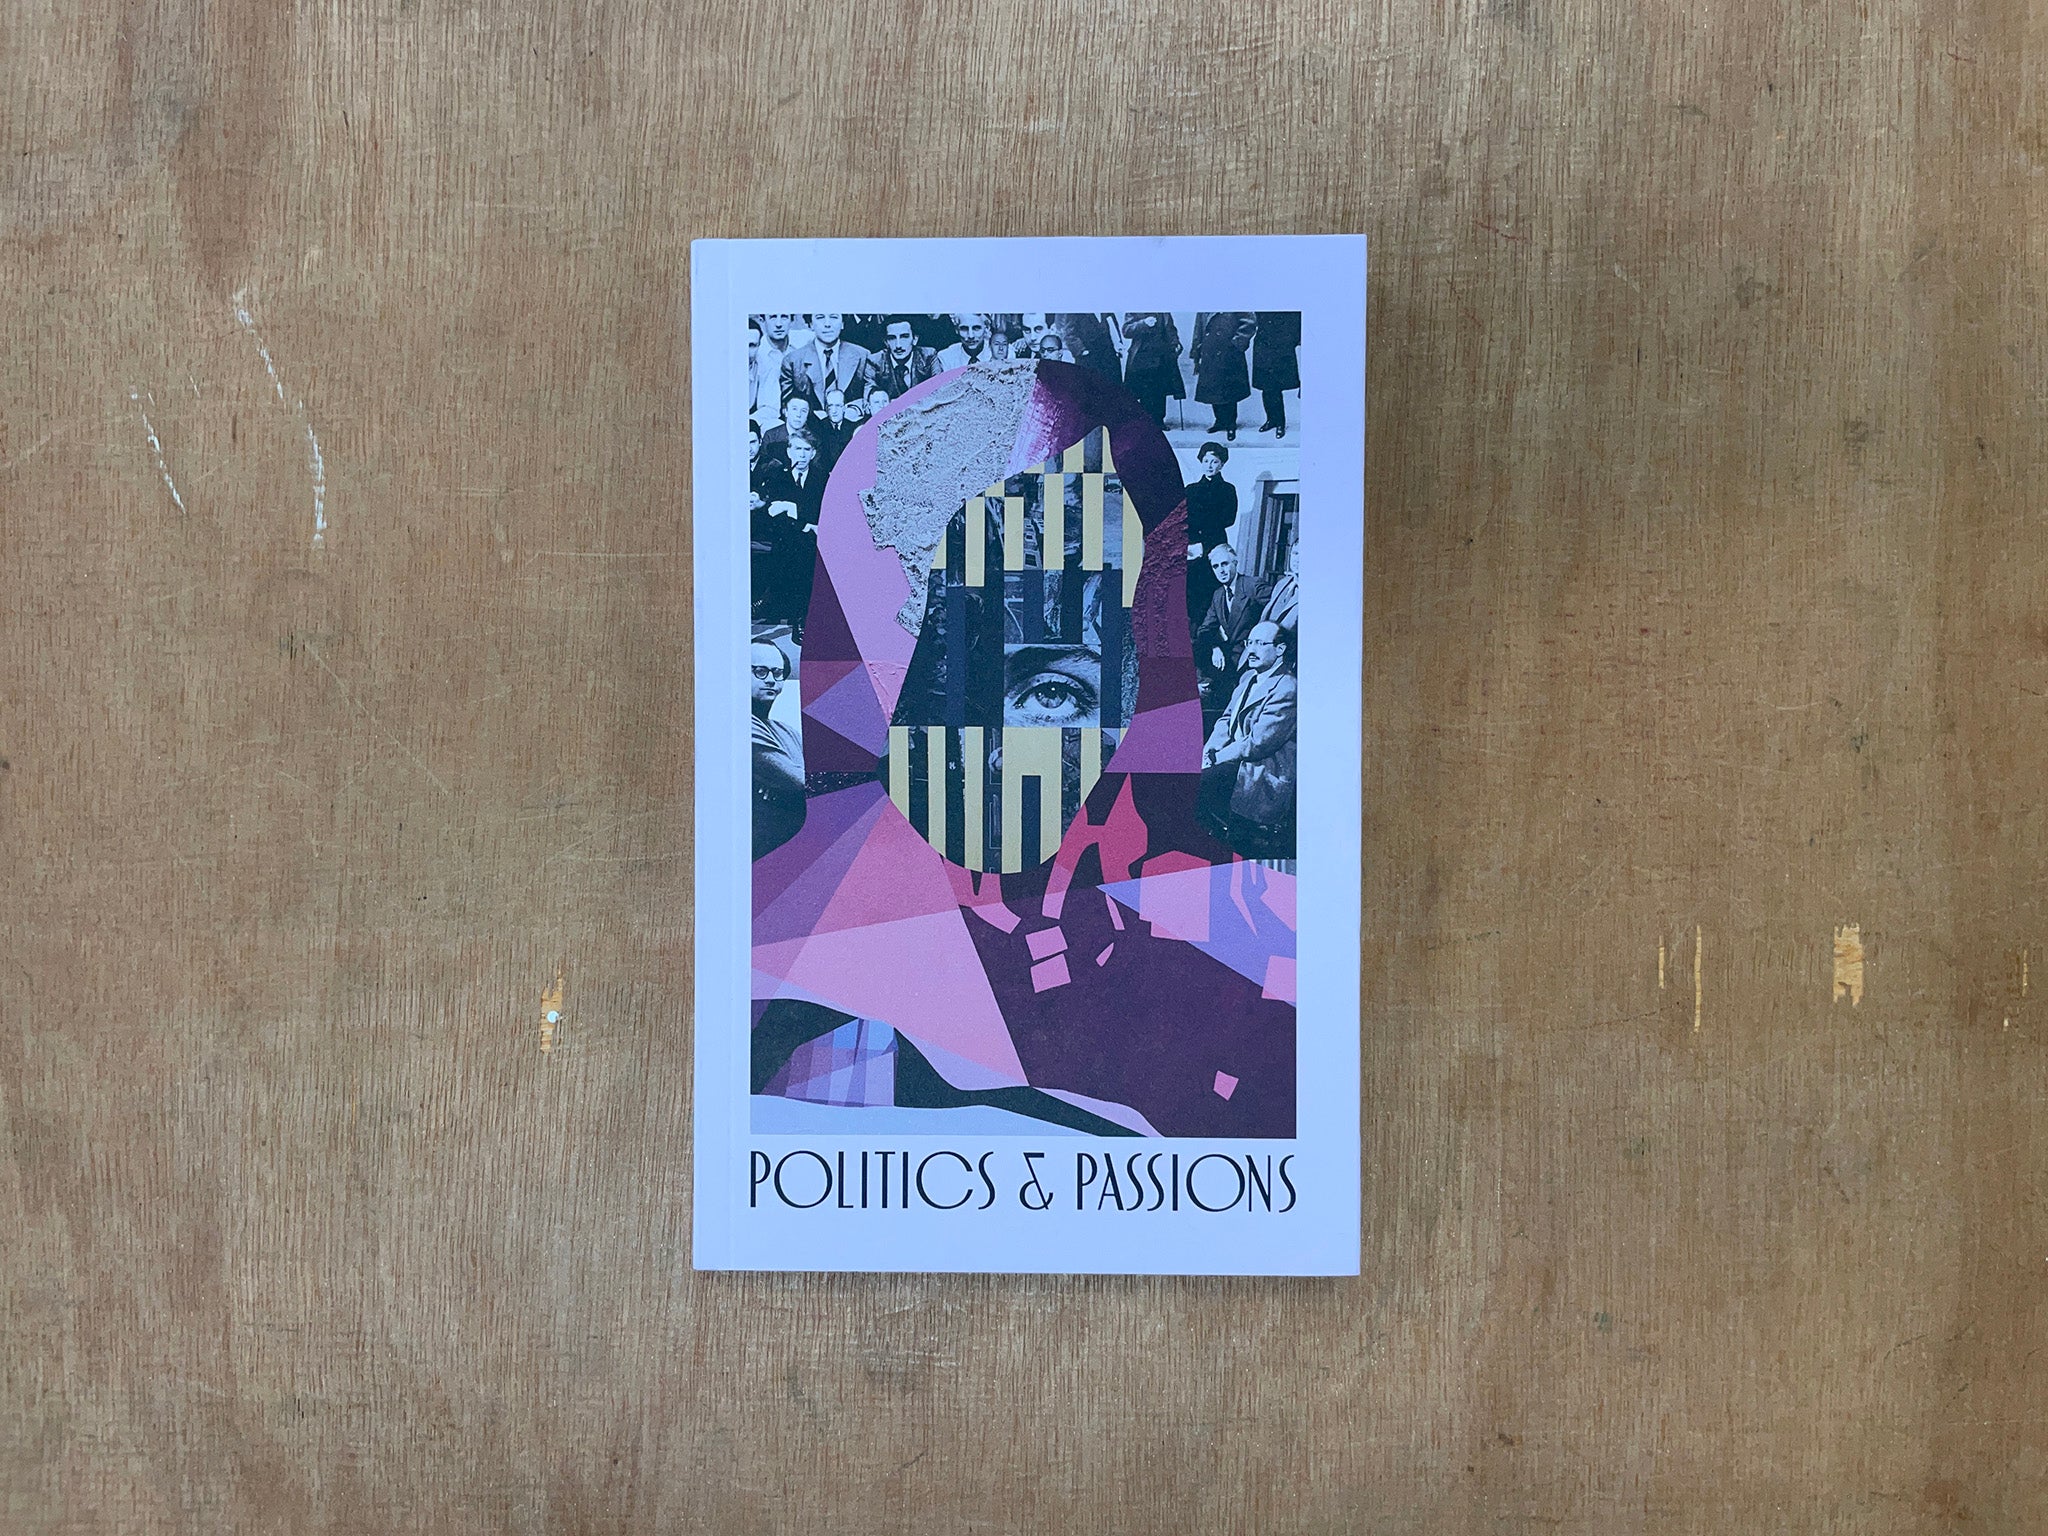 POLITICS & PASSIONS by Anna Ostoya & Chantal Mouffe